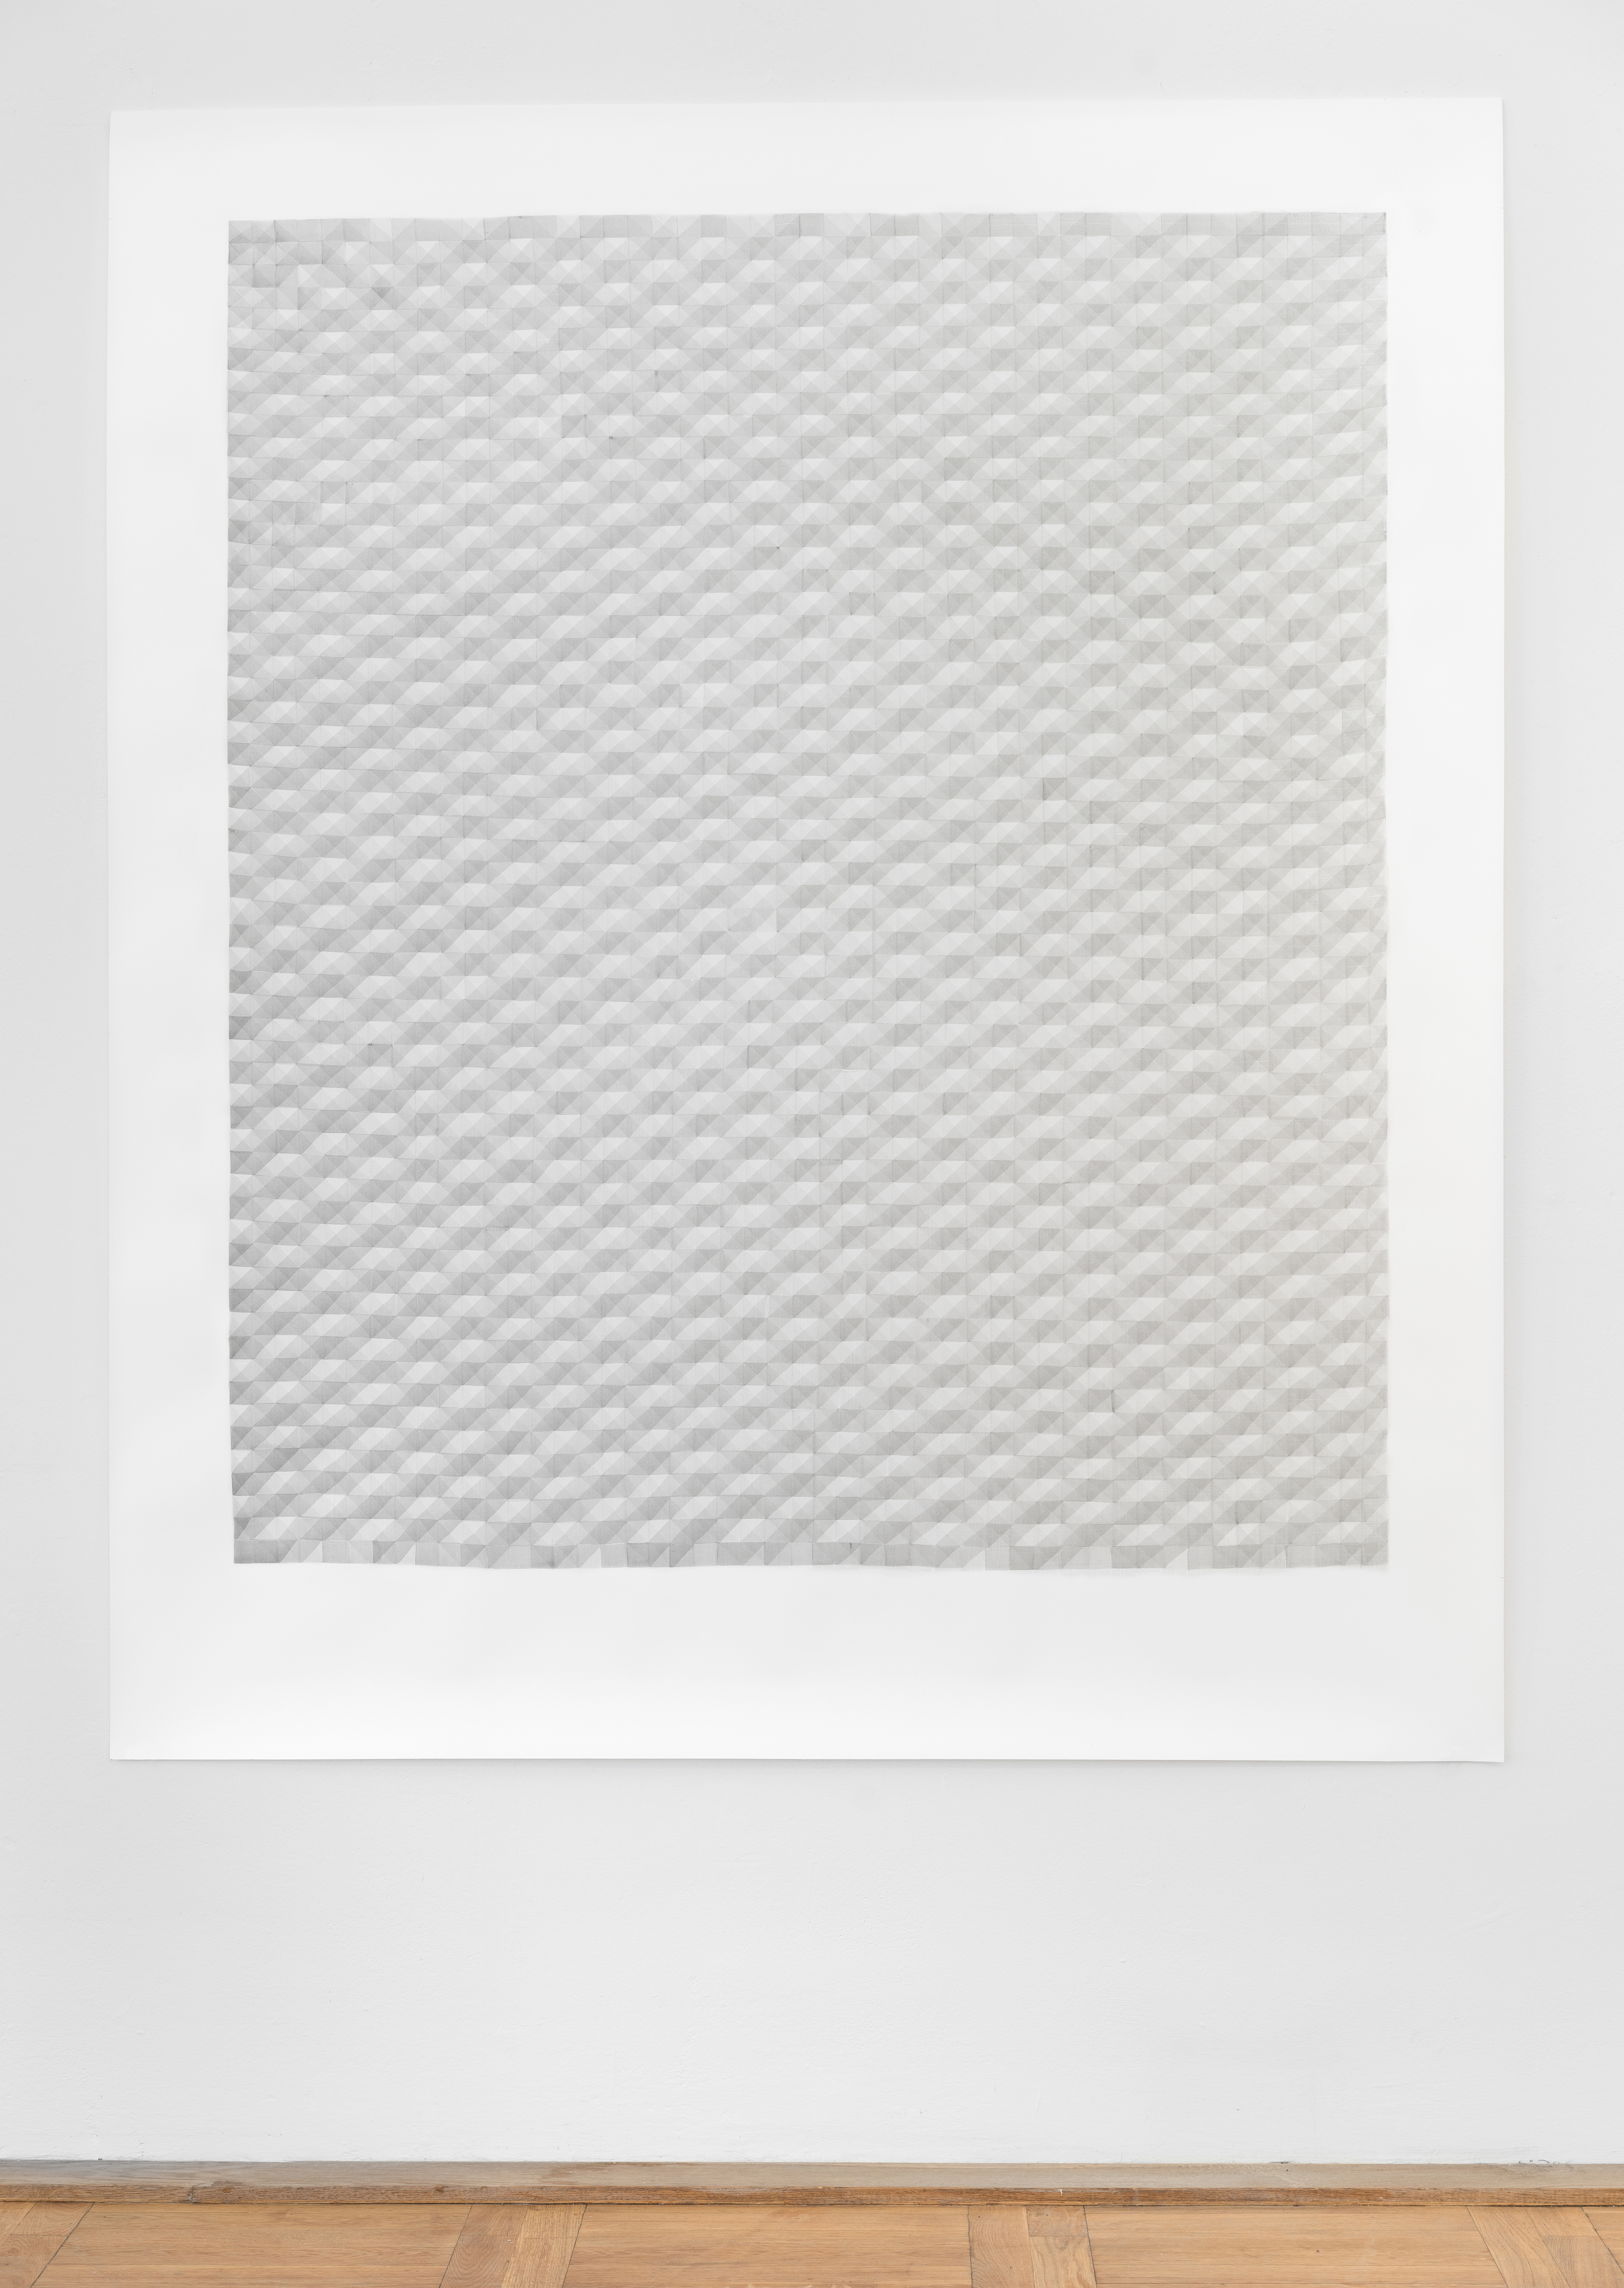 LUISE VON ROHDEN für L. (hvtt m/u 9/8), 2018, Tusche auf Papier, 140 × 120 cm, Foto: Thomas Bruns